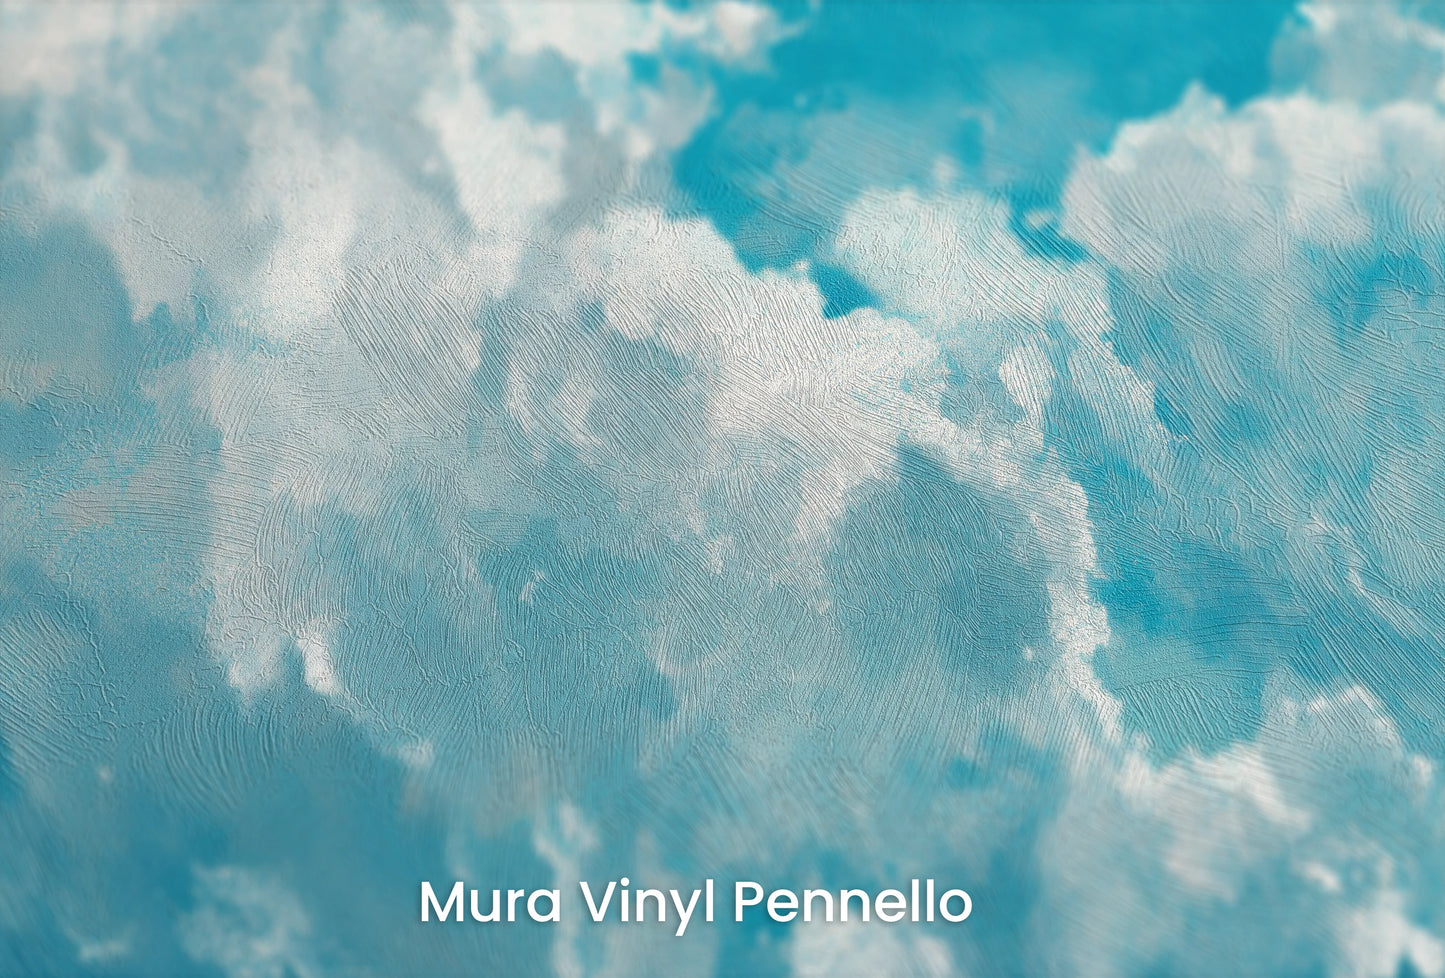 Zbliżenie na artystyczną fototapetę o nazwie Azure Purity na podłożu Mura Vinyl Pennello - faktura pociągnięć pędzla malarskiego.